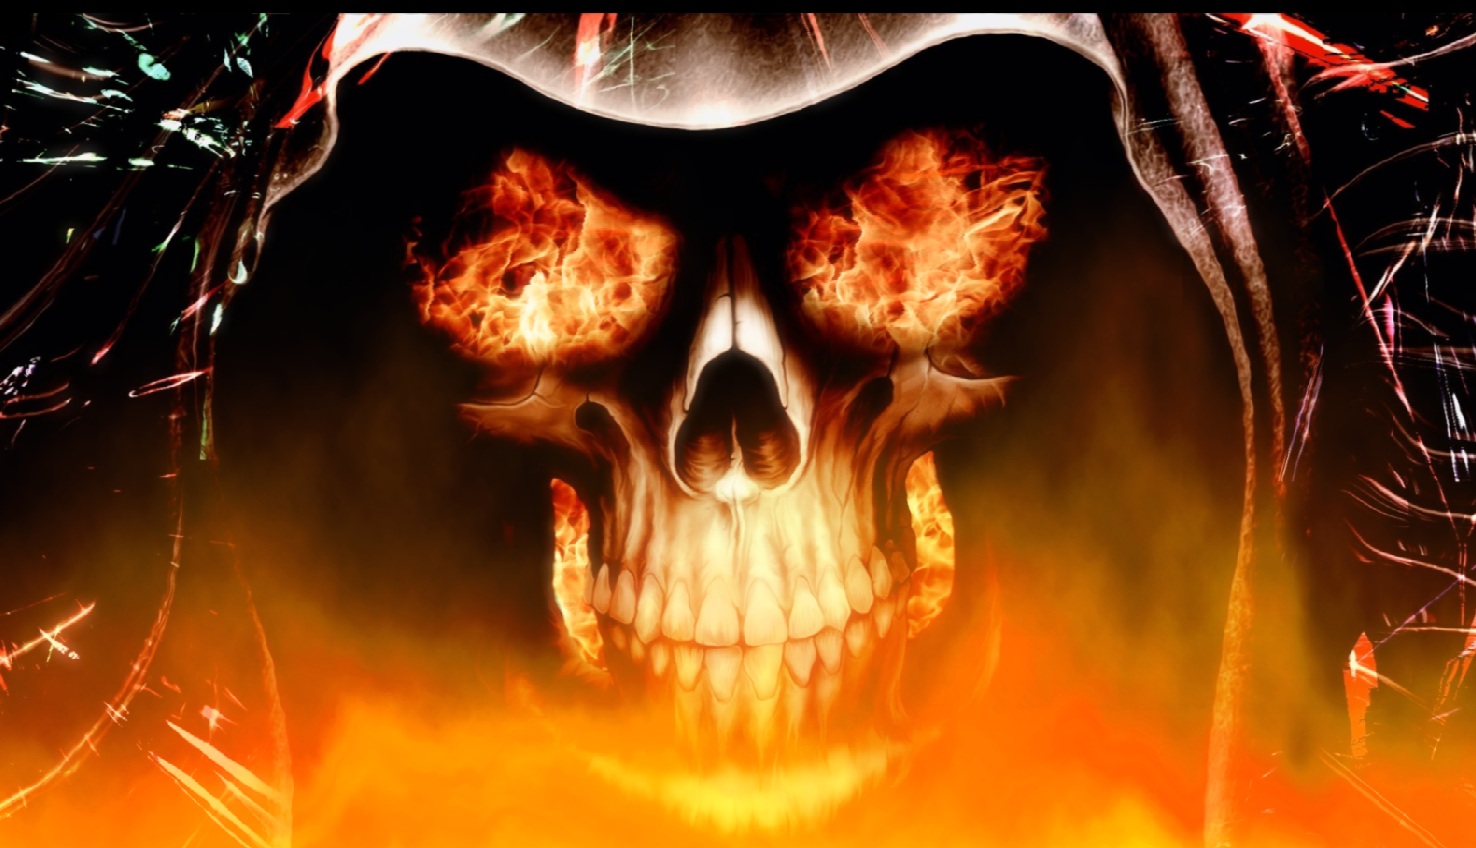 Fire Skull Animated Wallpaper Desktopanimated